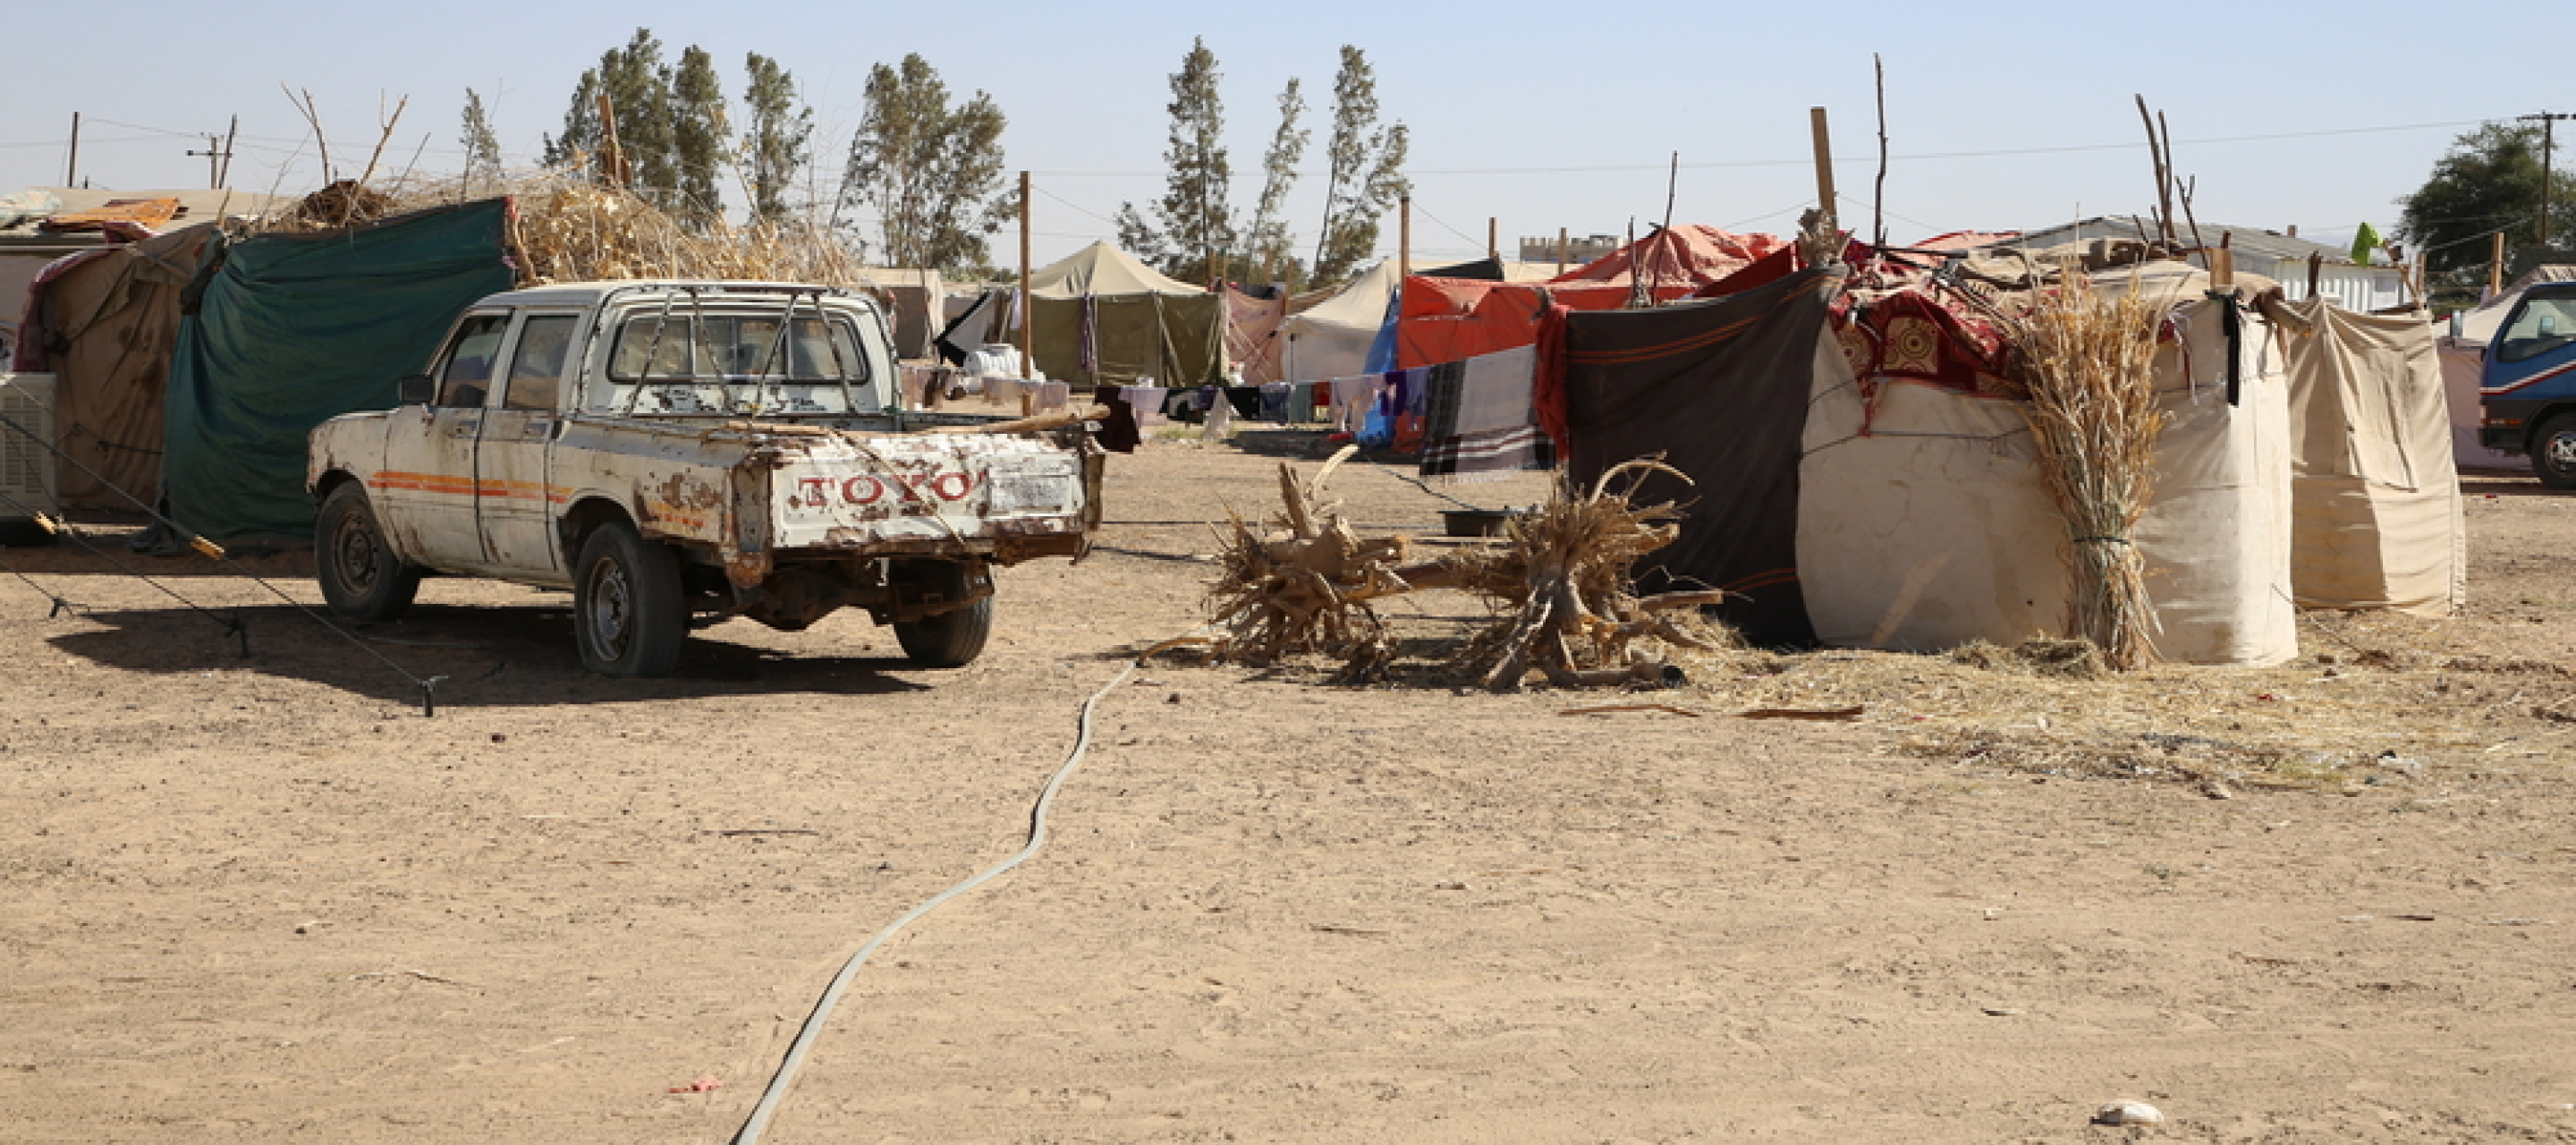 Ein altes Auto vor einem Camp mit vielen Zelten in einer wüstenähnlichen Landschaft